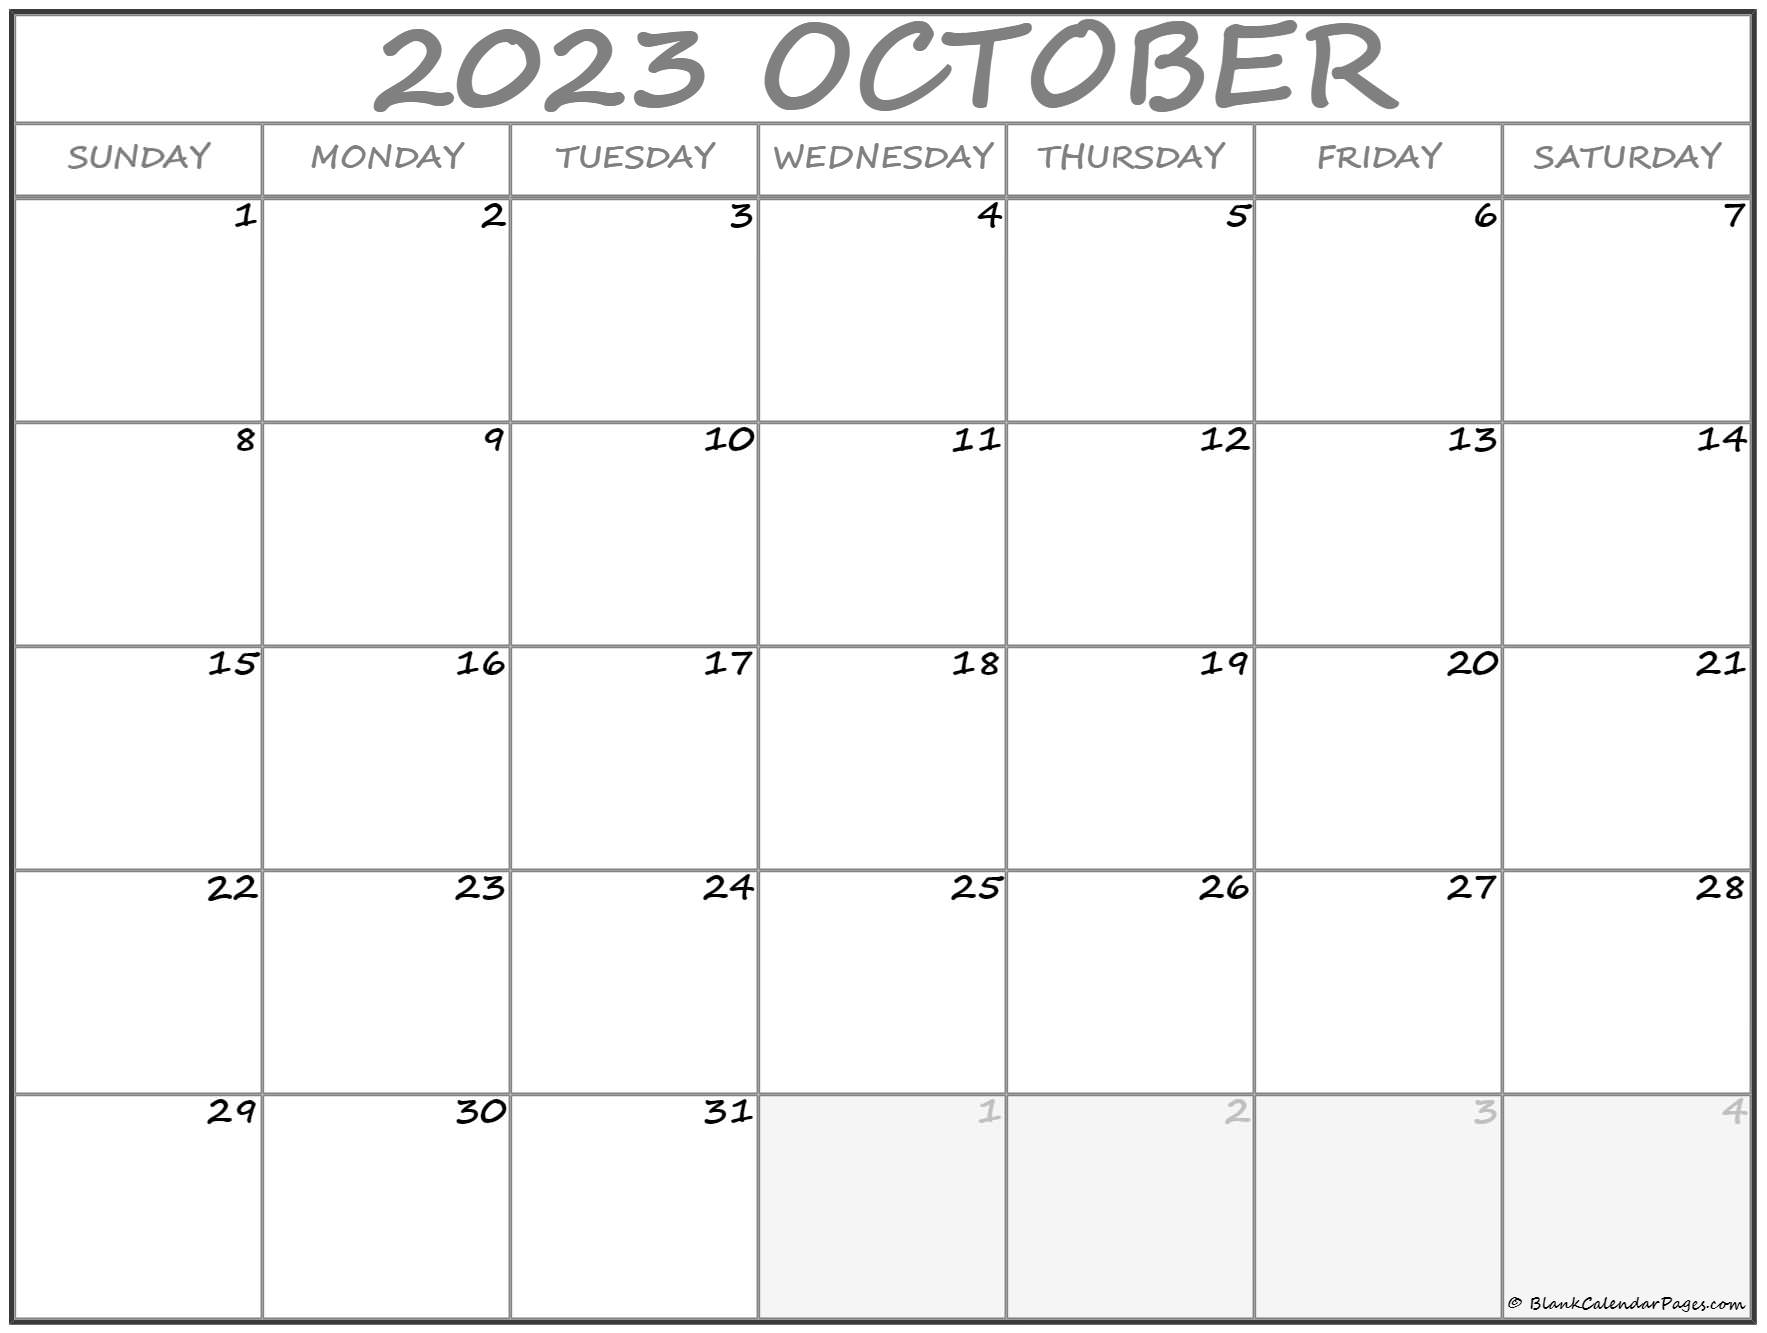 October 2023 calendar free printable calendar